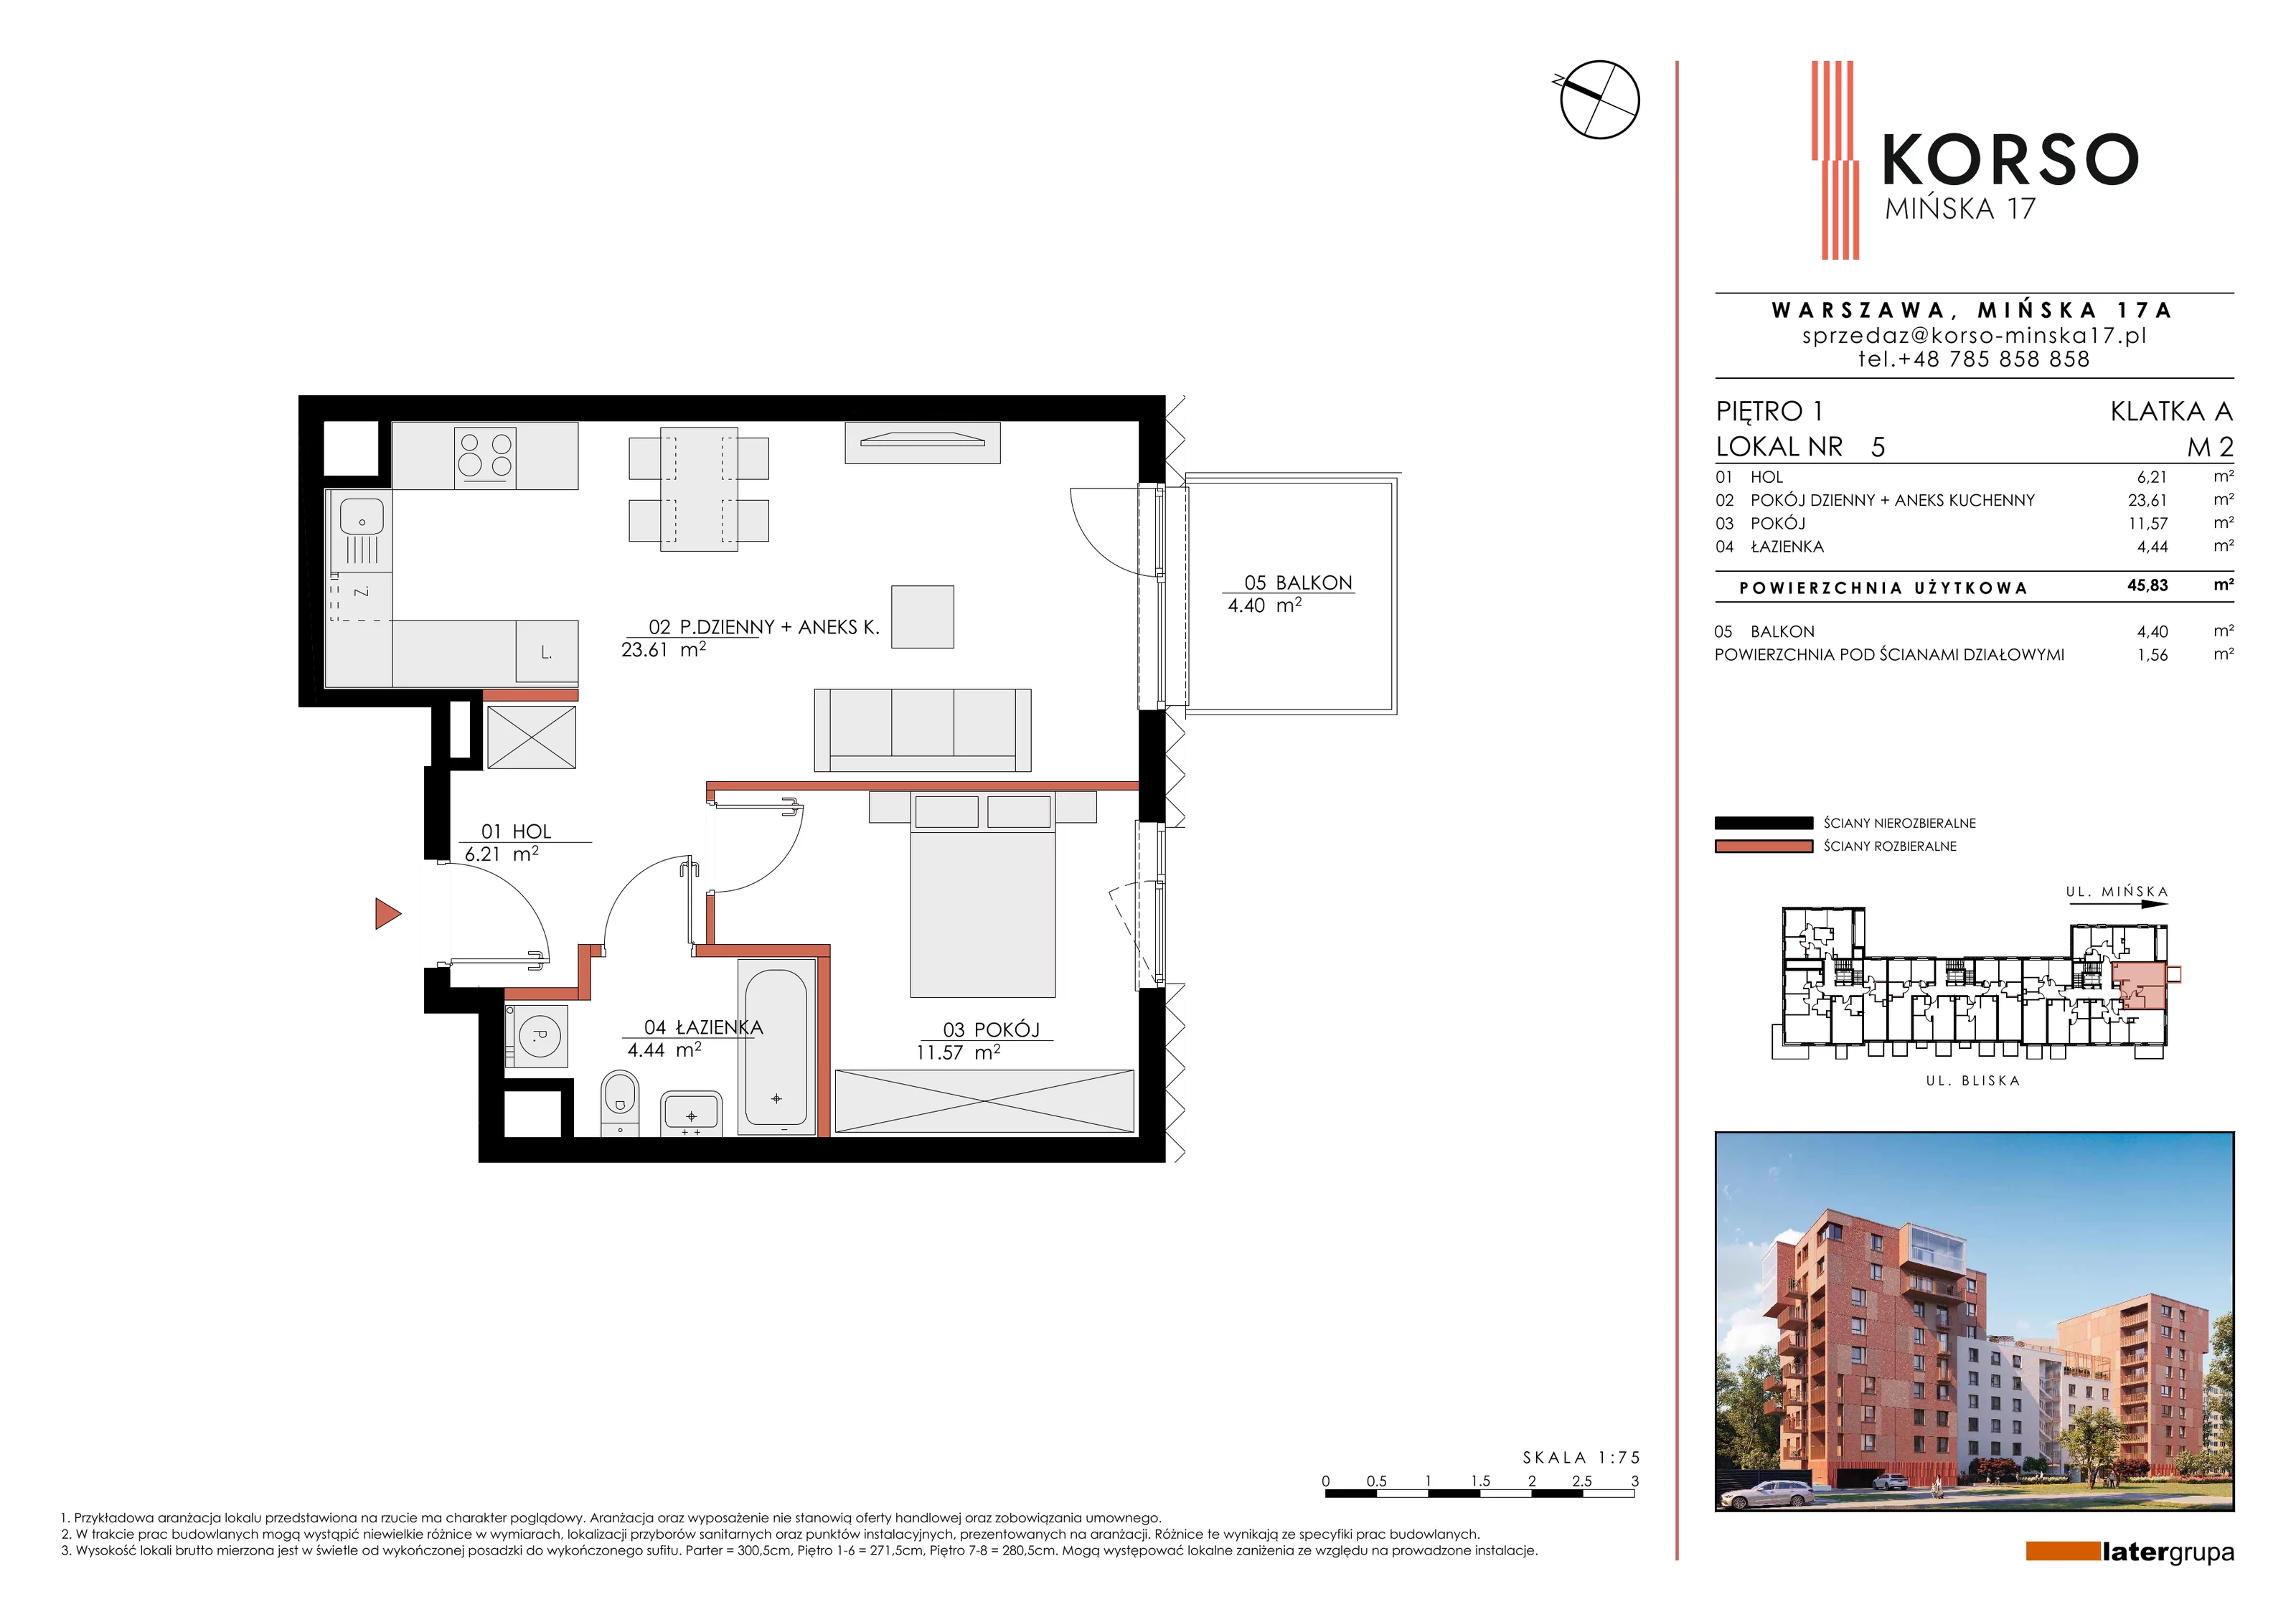 Mieszkanie 45,83 m², piętro 1, oferta nr 5, KORSO Mińska 17, Warszawa, Praga Południe, Kamionek, ul. Mińska 17